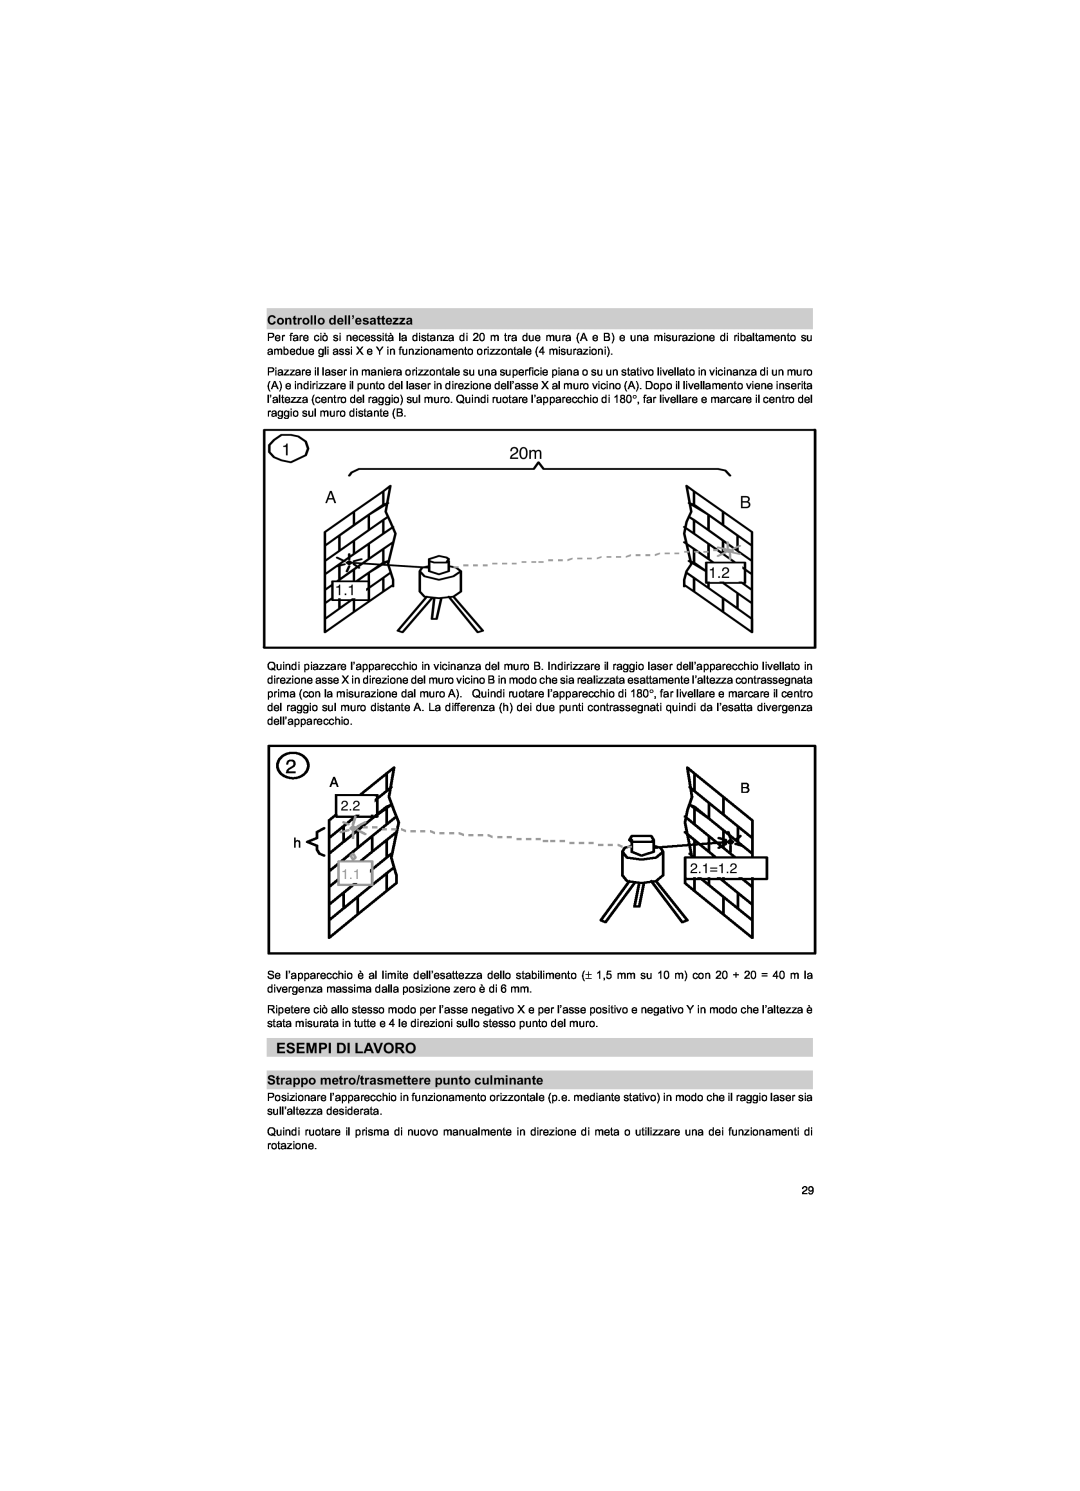 Trimble Outdoors HV301 manual Esempi Di Lavoro, Controllo dell’esattezza, Strappo metro/trasmettere punto culminante, A 